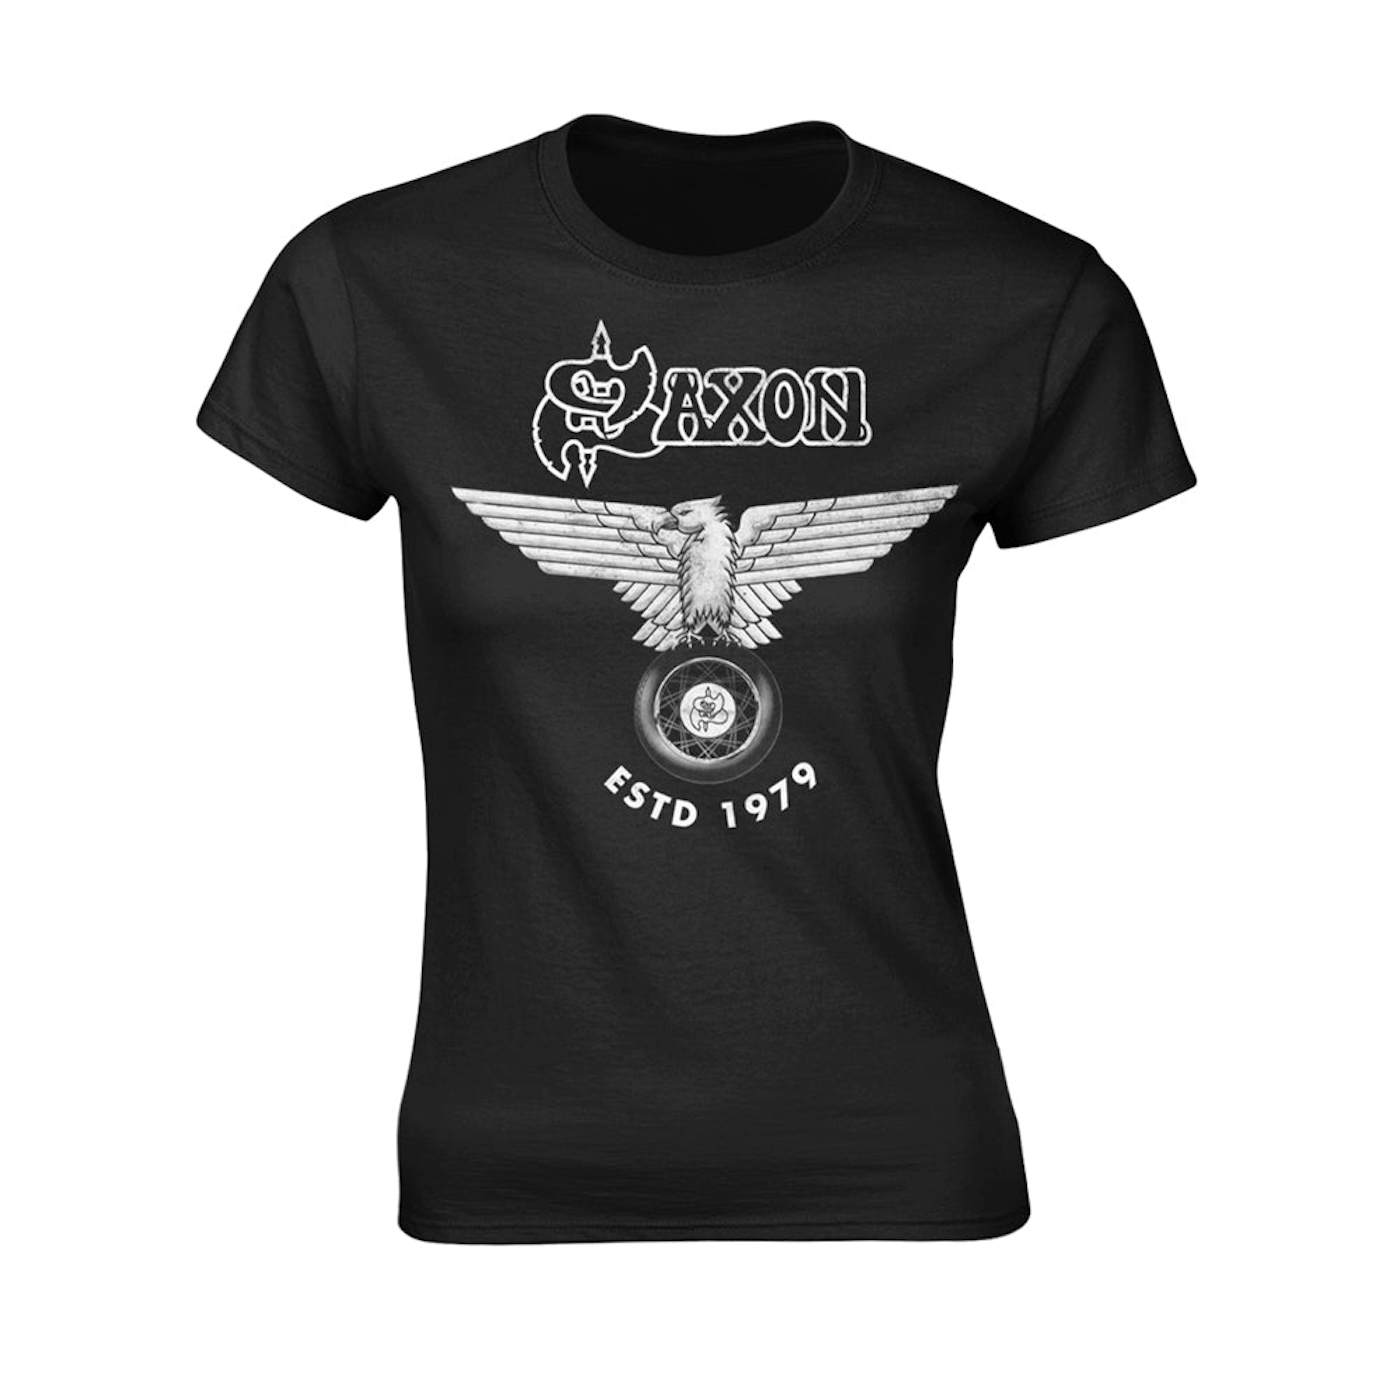 Saxon Women's T Shirt - Estd 1979